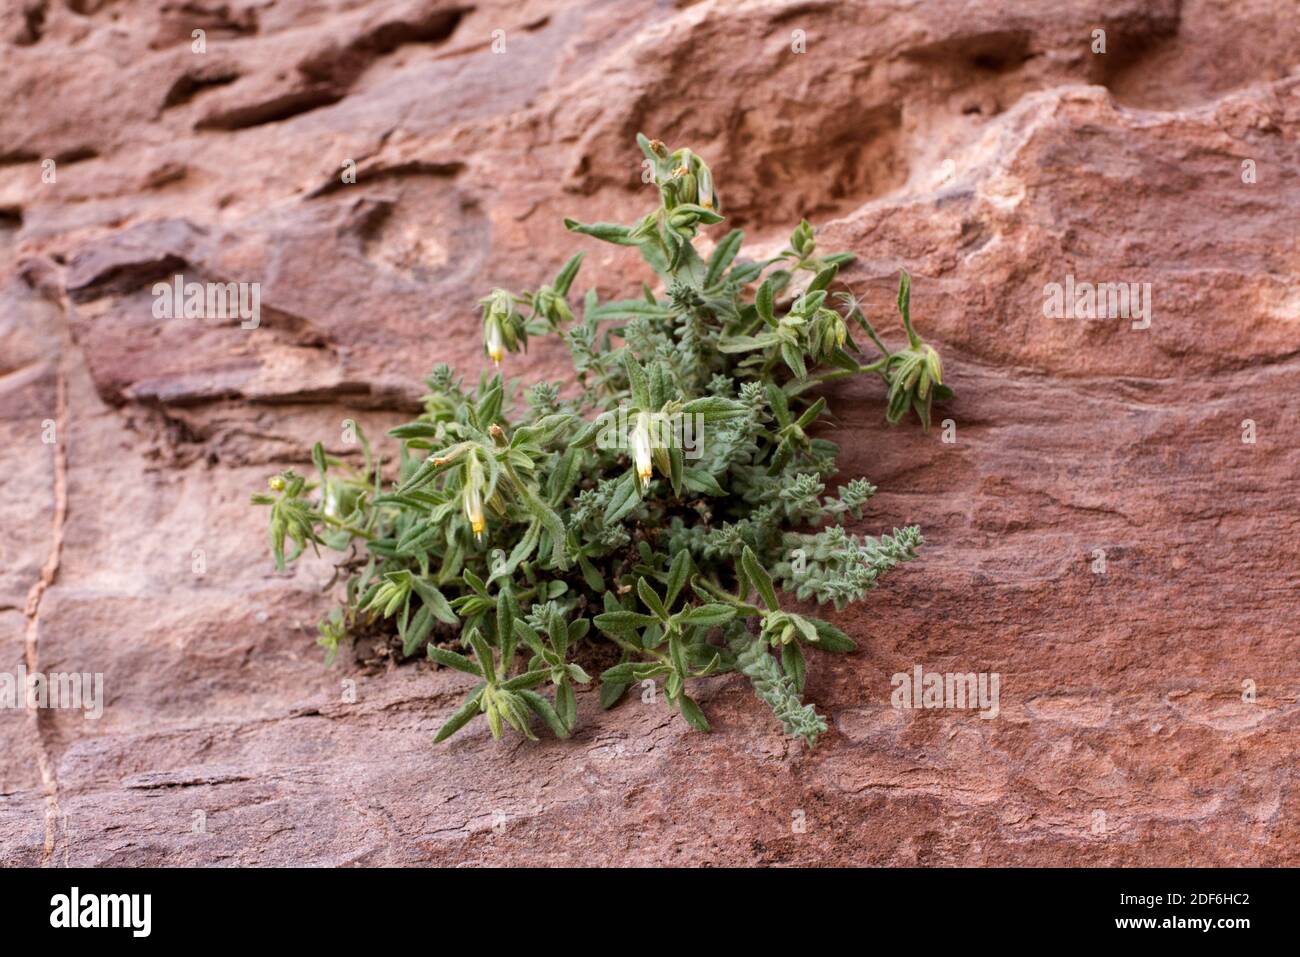 Der goldene Tropfen (Podonosma orientalis oder Onosma orientalis) ist ein mehrjähriges Kraut, das auf Felsen und Spalten wächst. Dieses Foto wurde in Petra, Jordanien, aufgenommen. Stockfoto